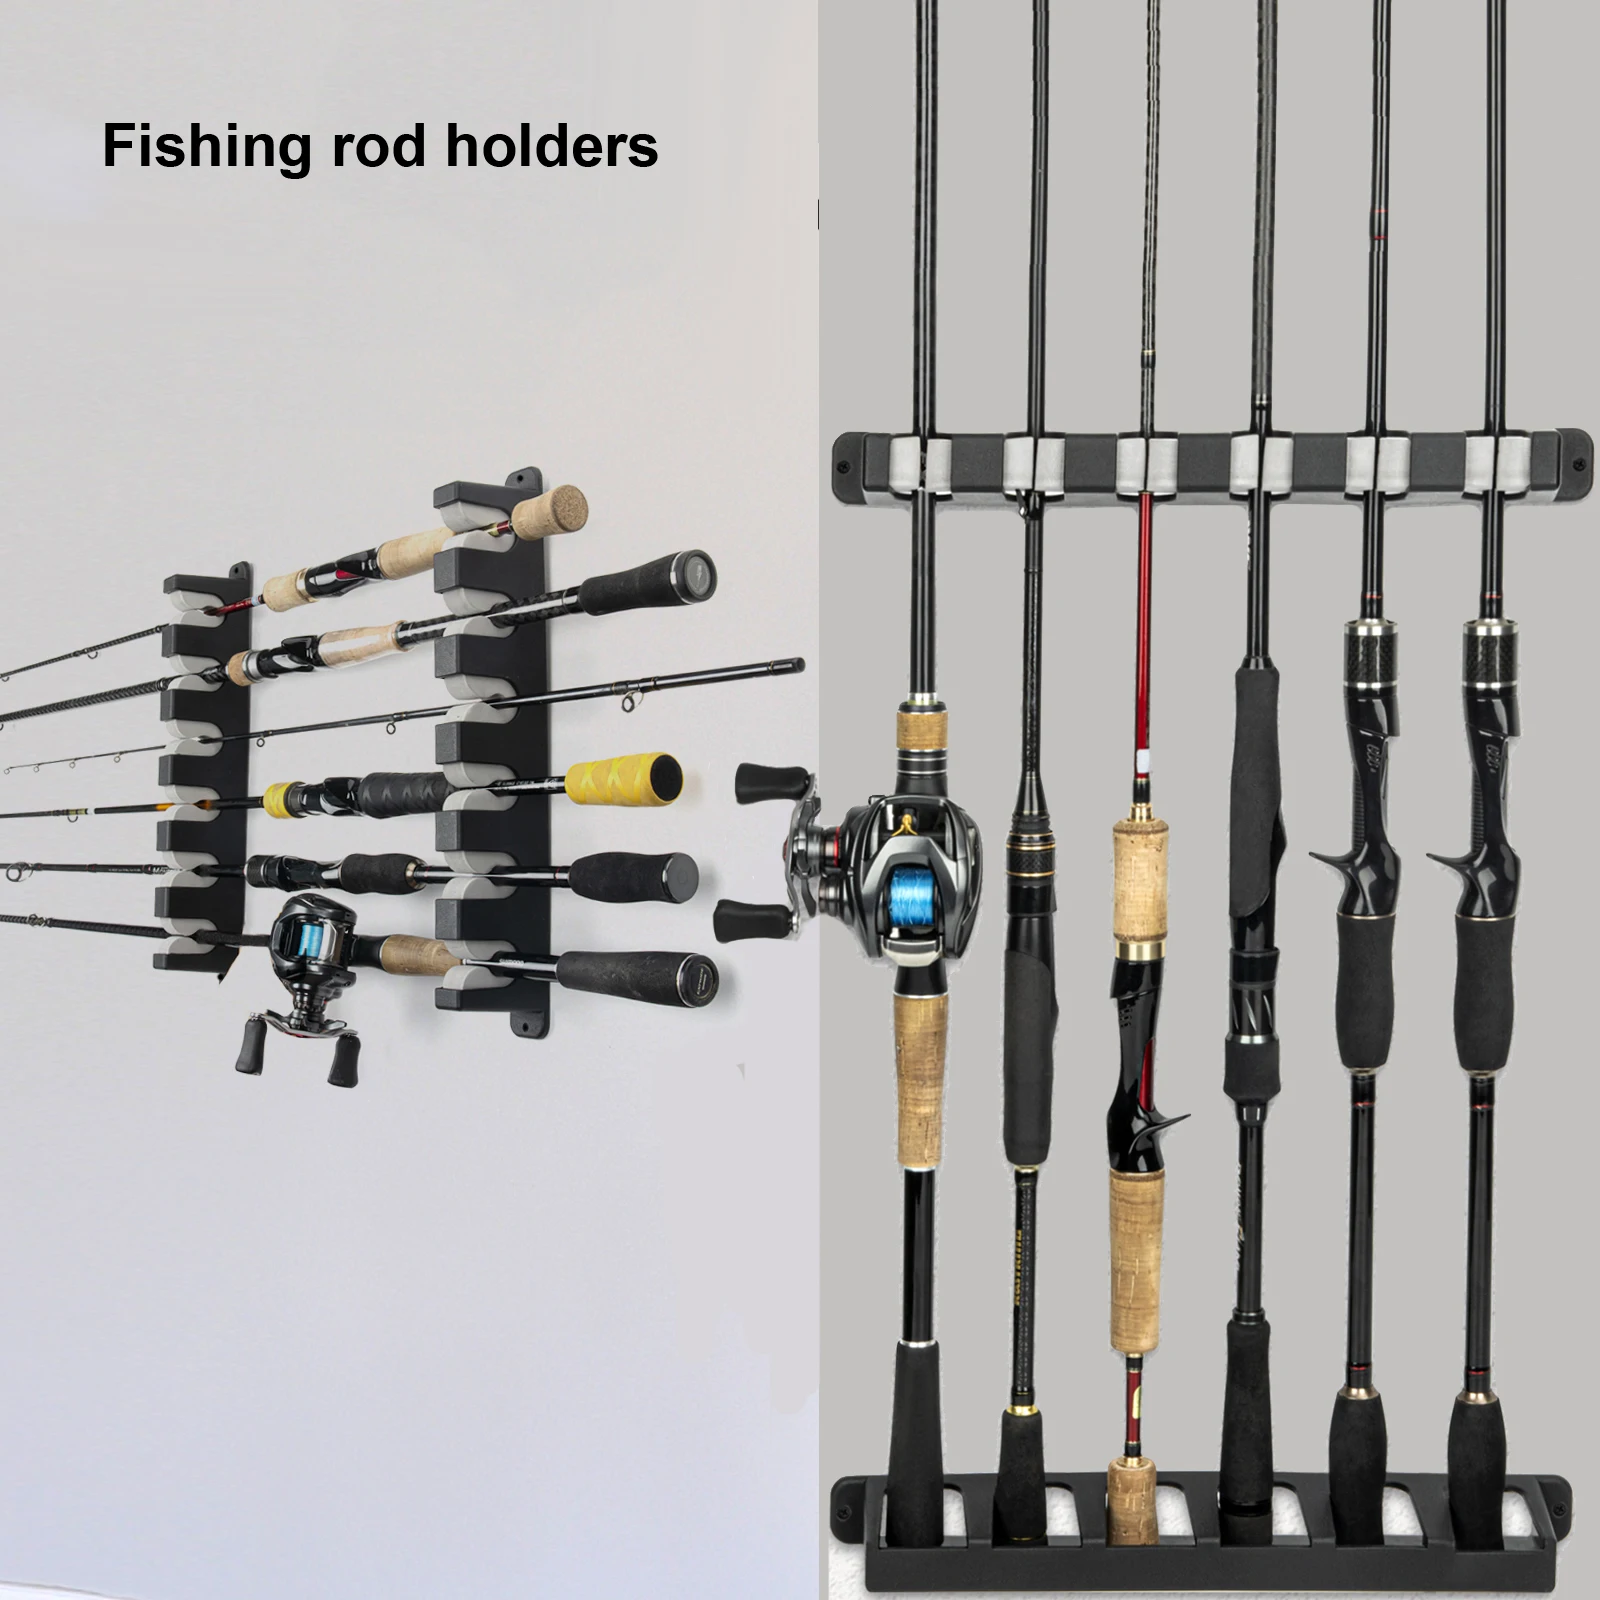 THKFISH-soportes de caña de pescar, 1 par, montaje en pared, estante de poste de pesca Horizontal para garaje, habitación, barcos, tienda, 6, Kit de Combos de caña de pescar